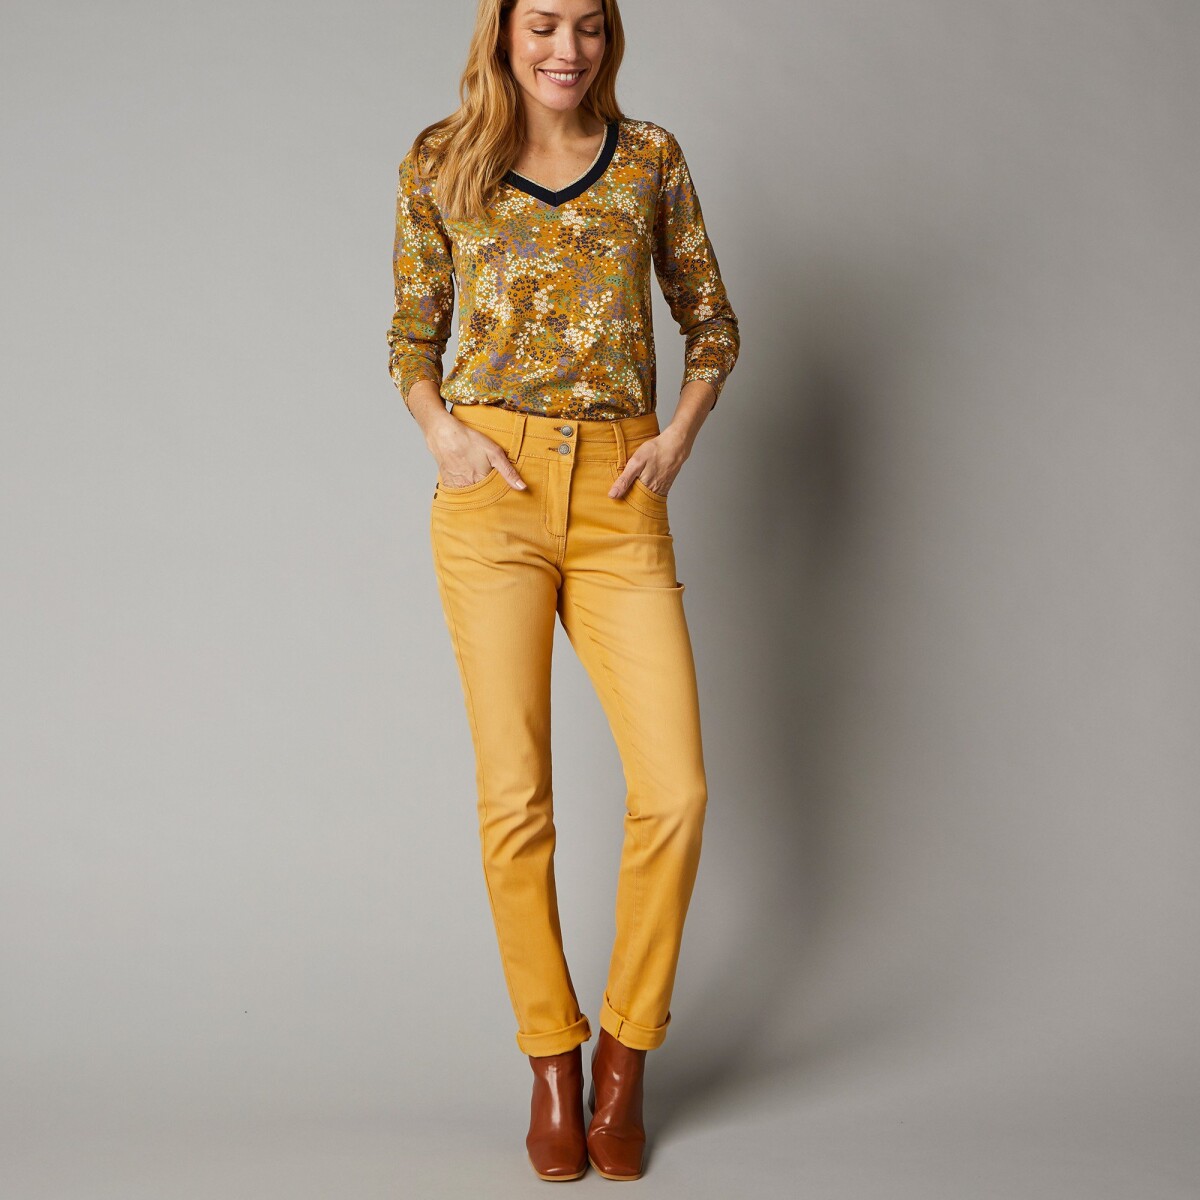 Rovné strečové džínsy, farebné